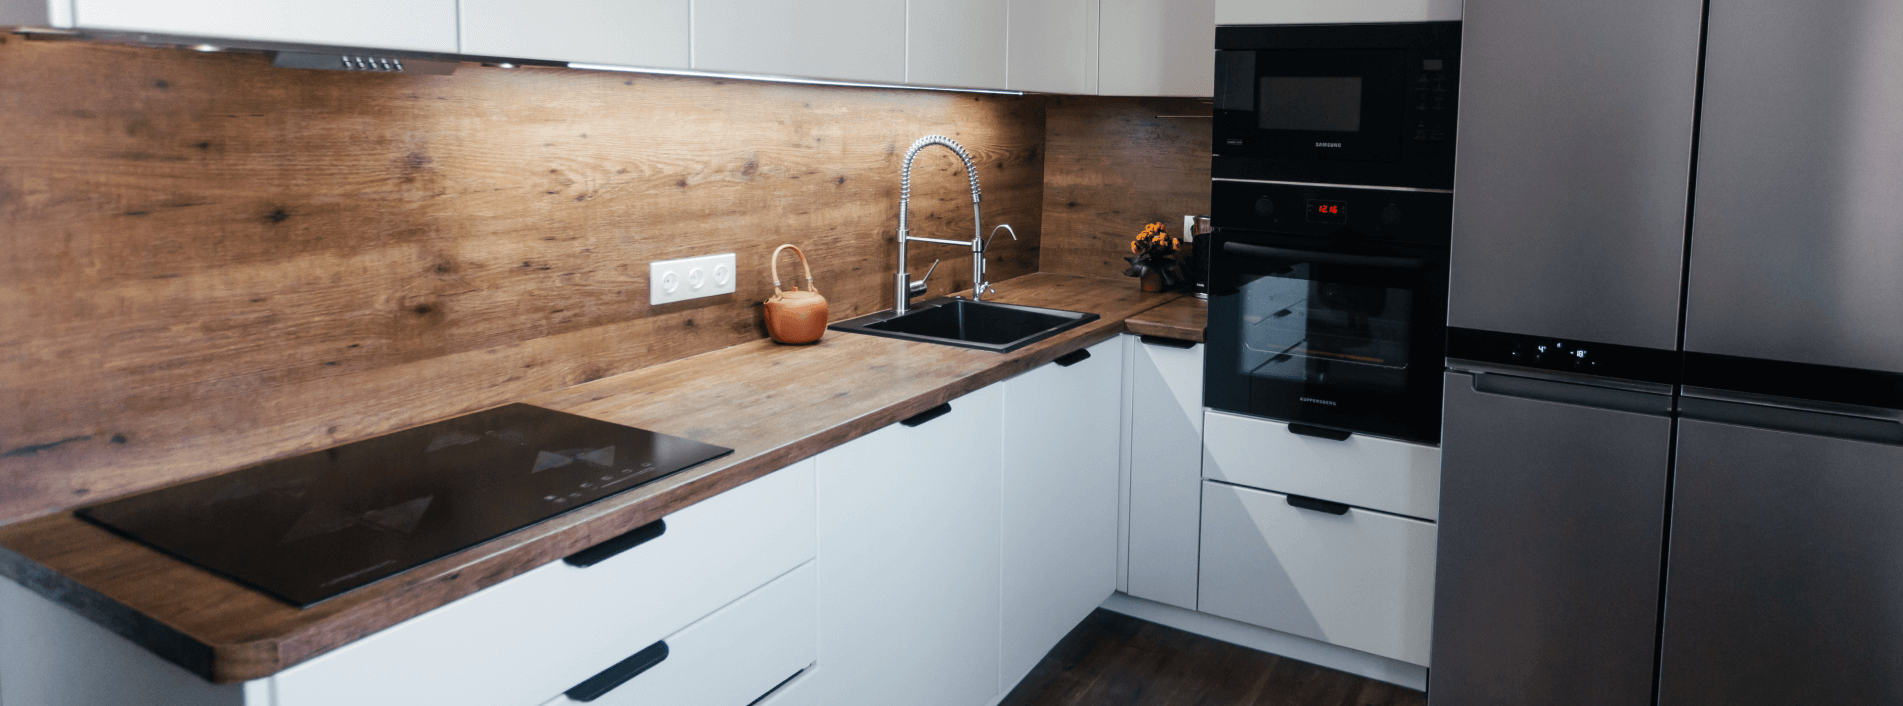 Советы и решения для маленьких кухонь